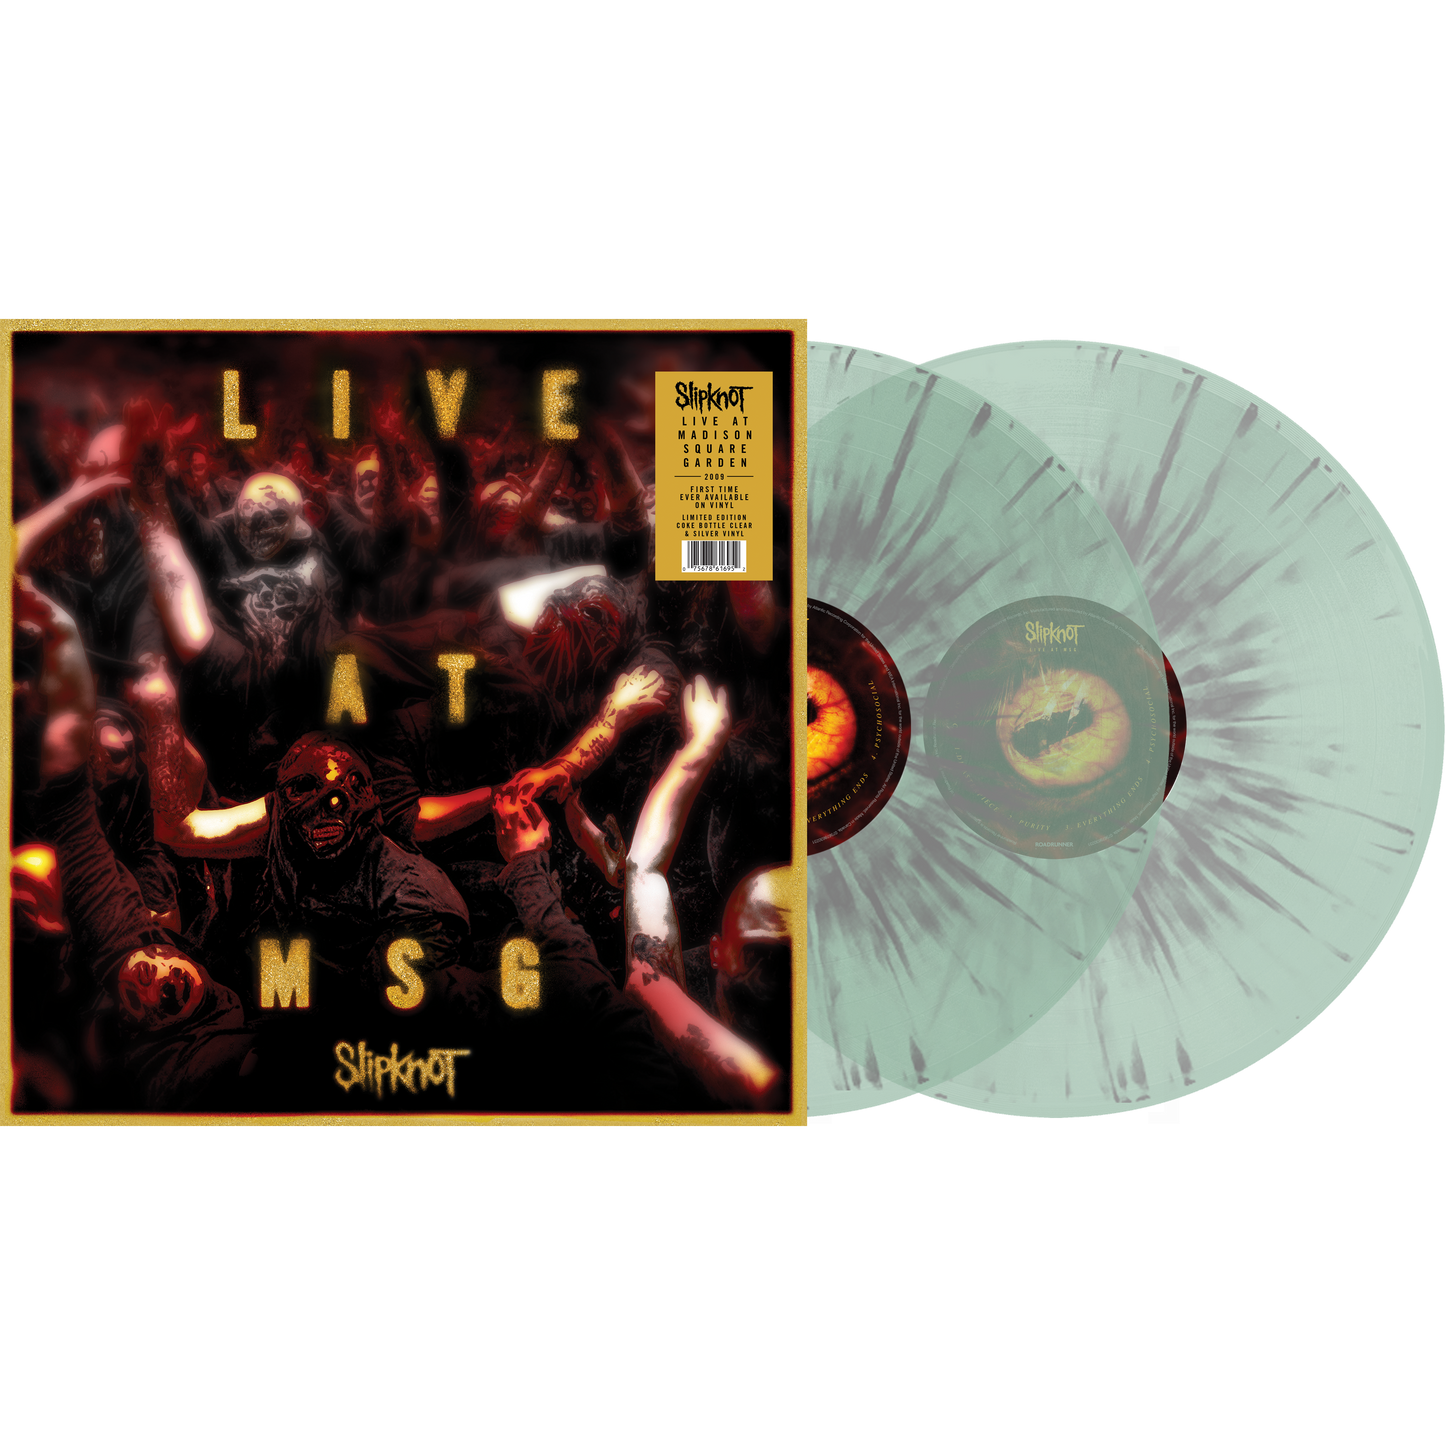 Slipknot "Live At MSG" Vinyl in Bottle Clear